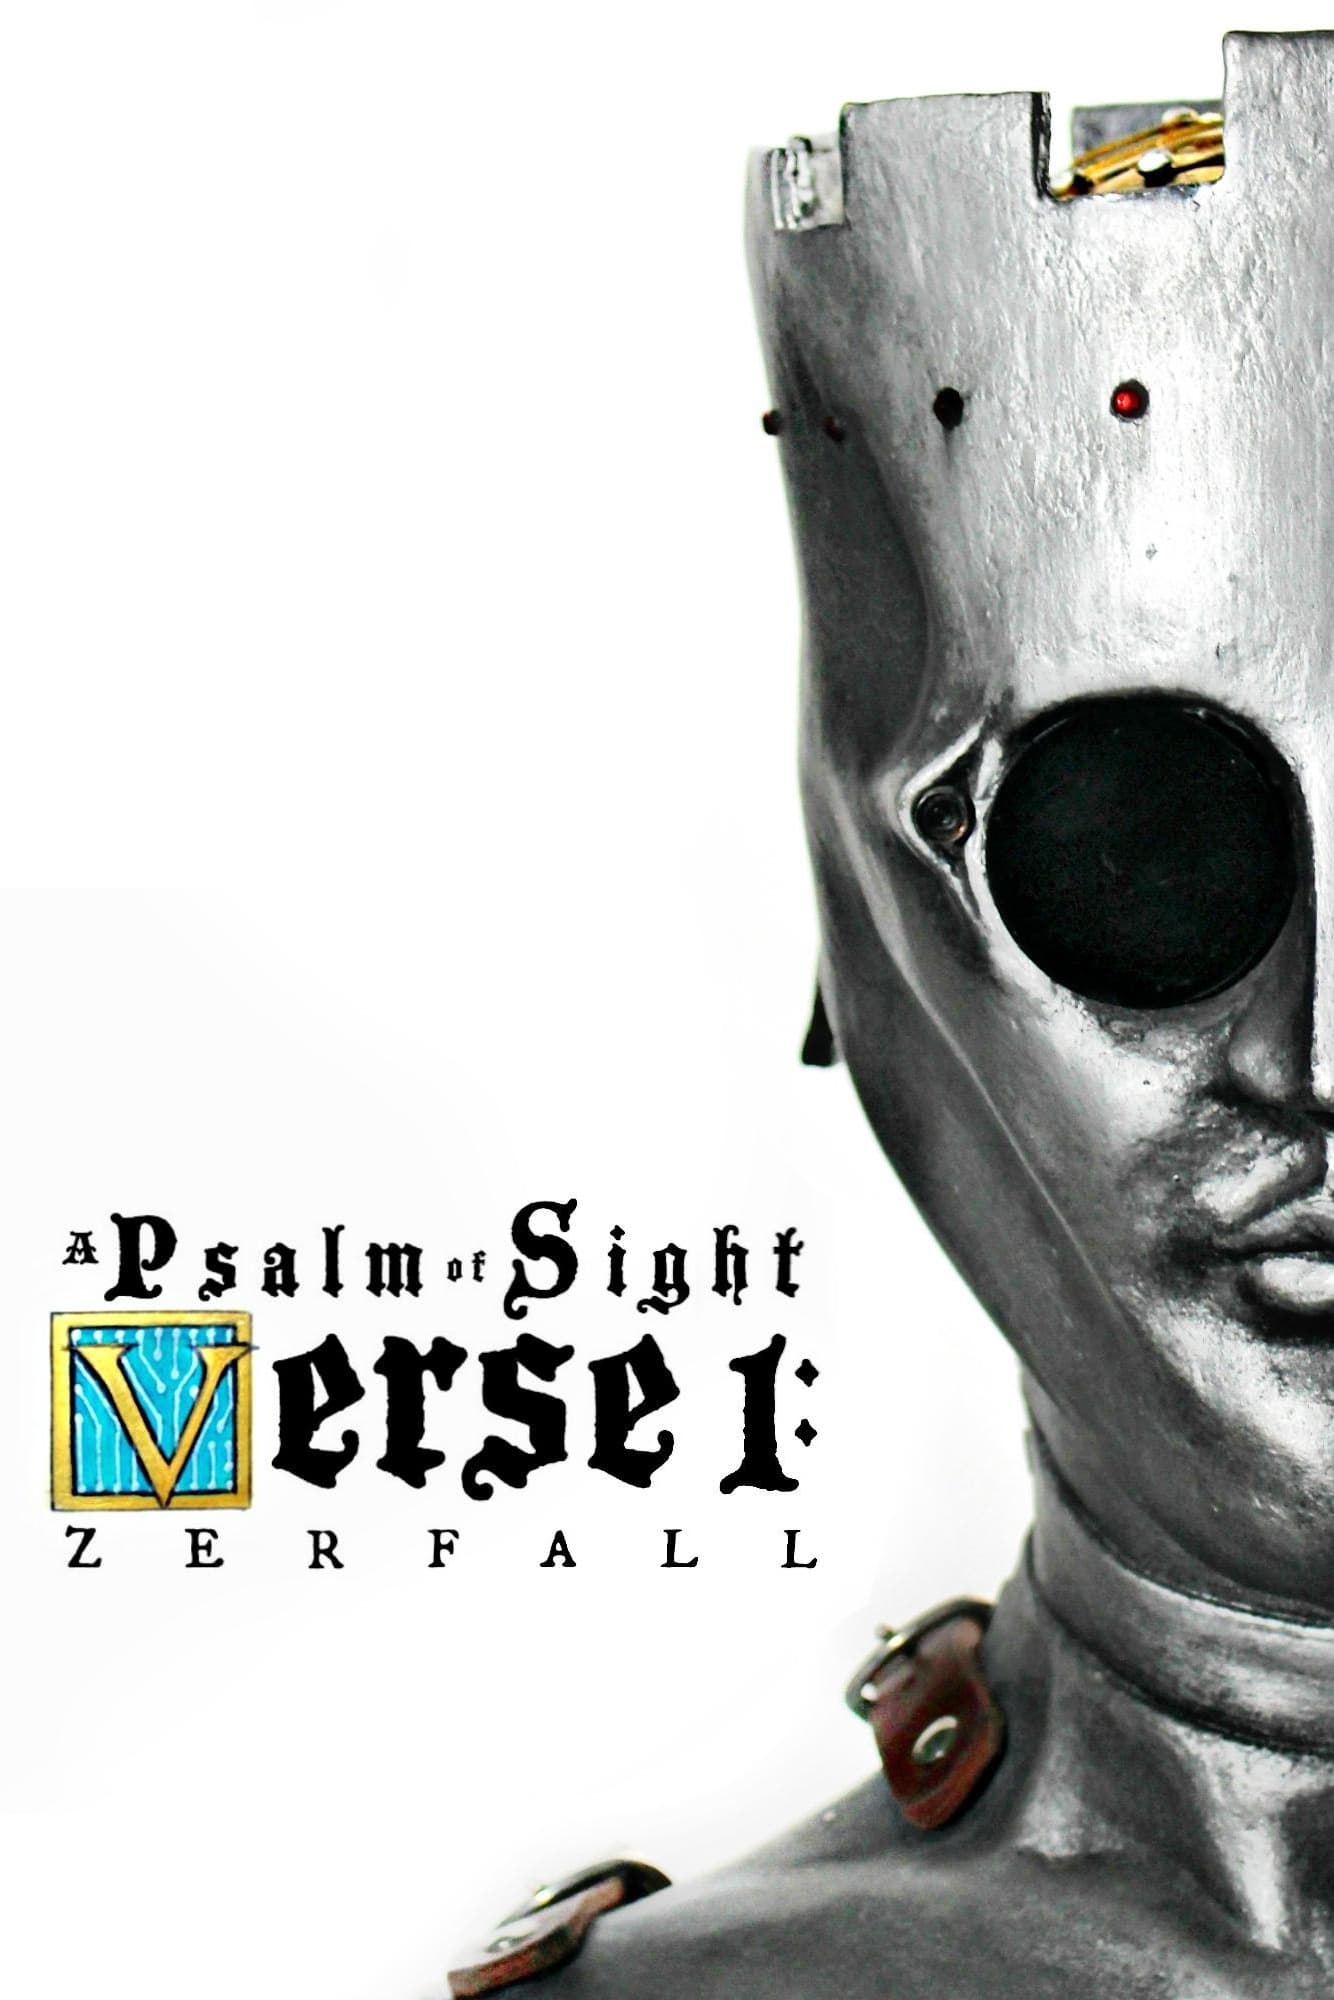 A Psalm of Sight Verse 1: Zerfall